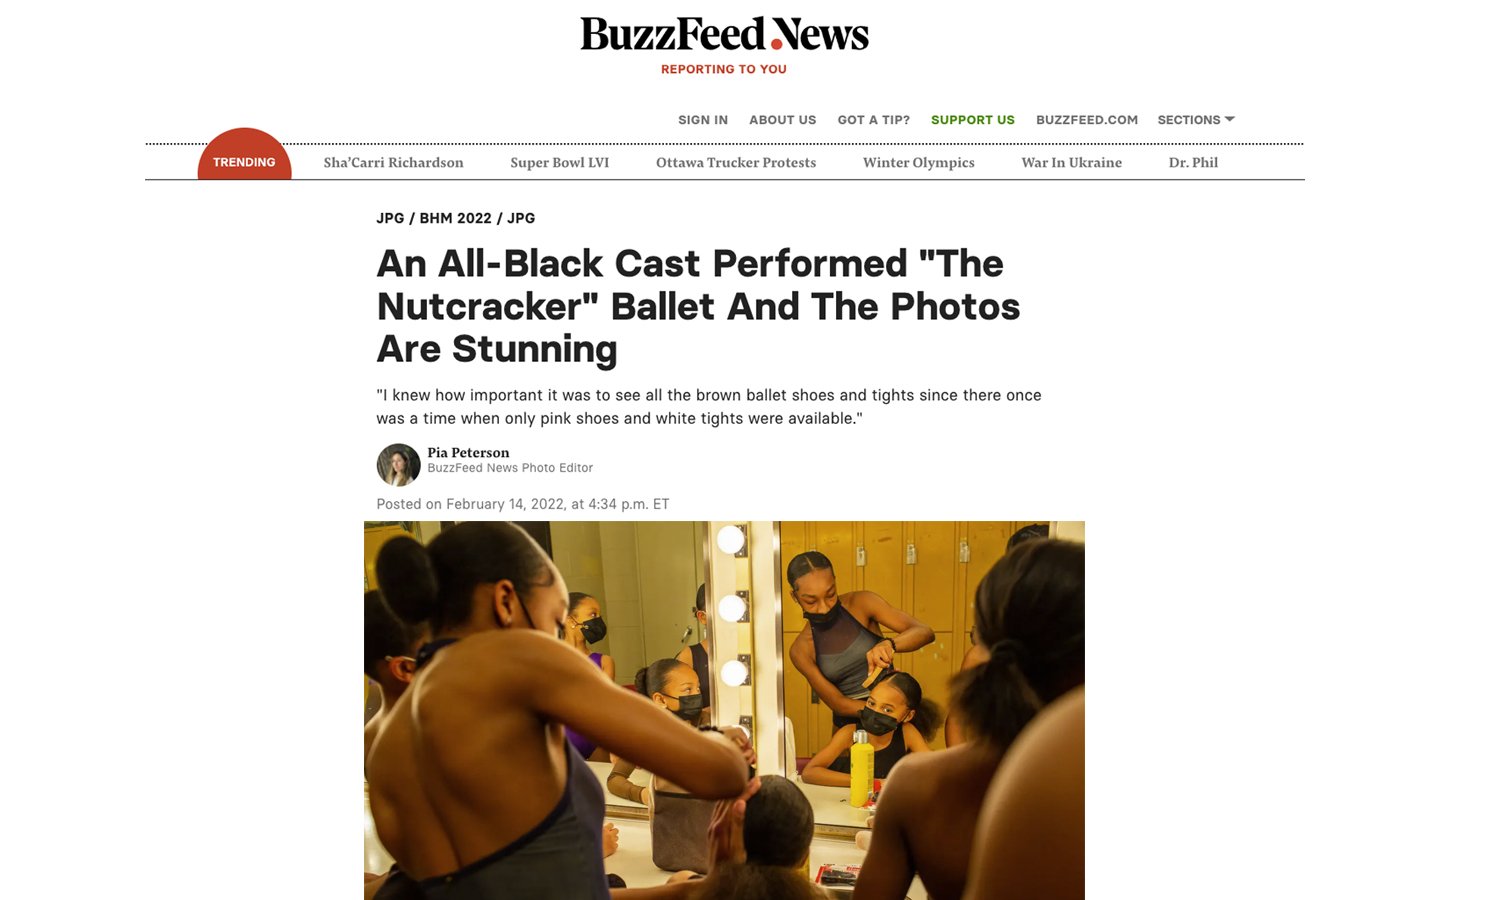 The Chocolate Ballerina Company via Buzzfeed